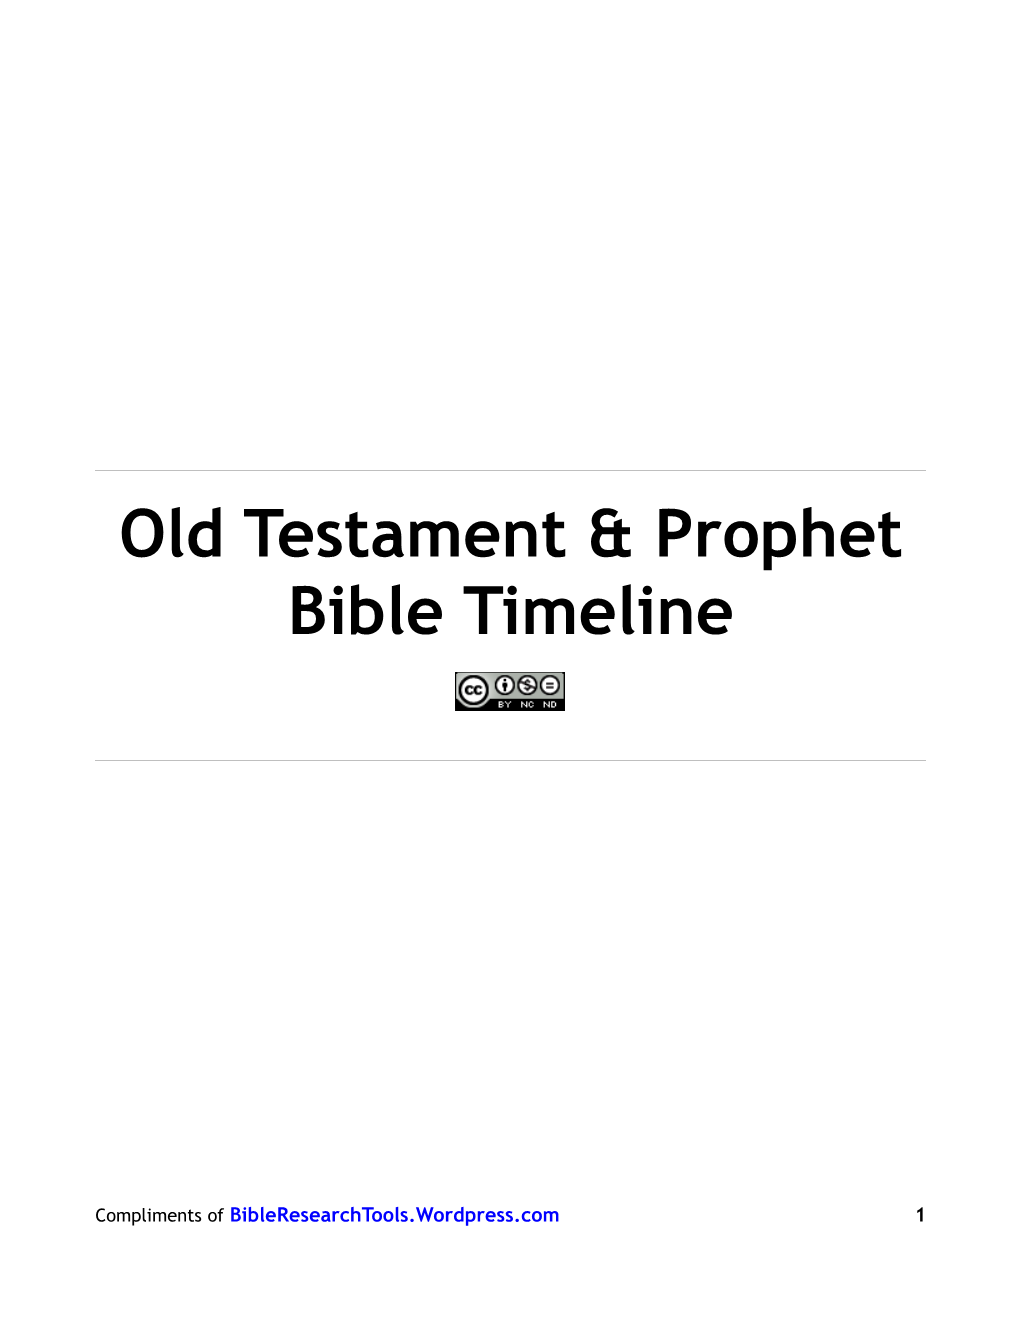 Old Testament & Prophet Bible Timeline